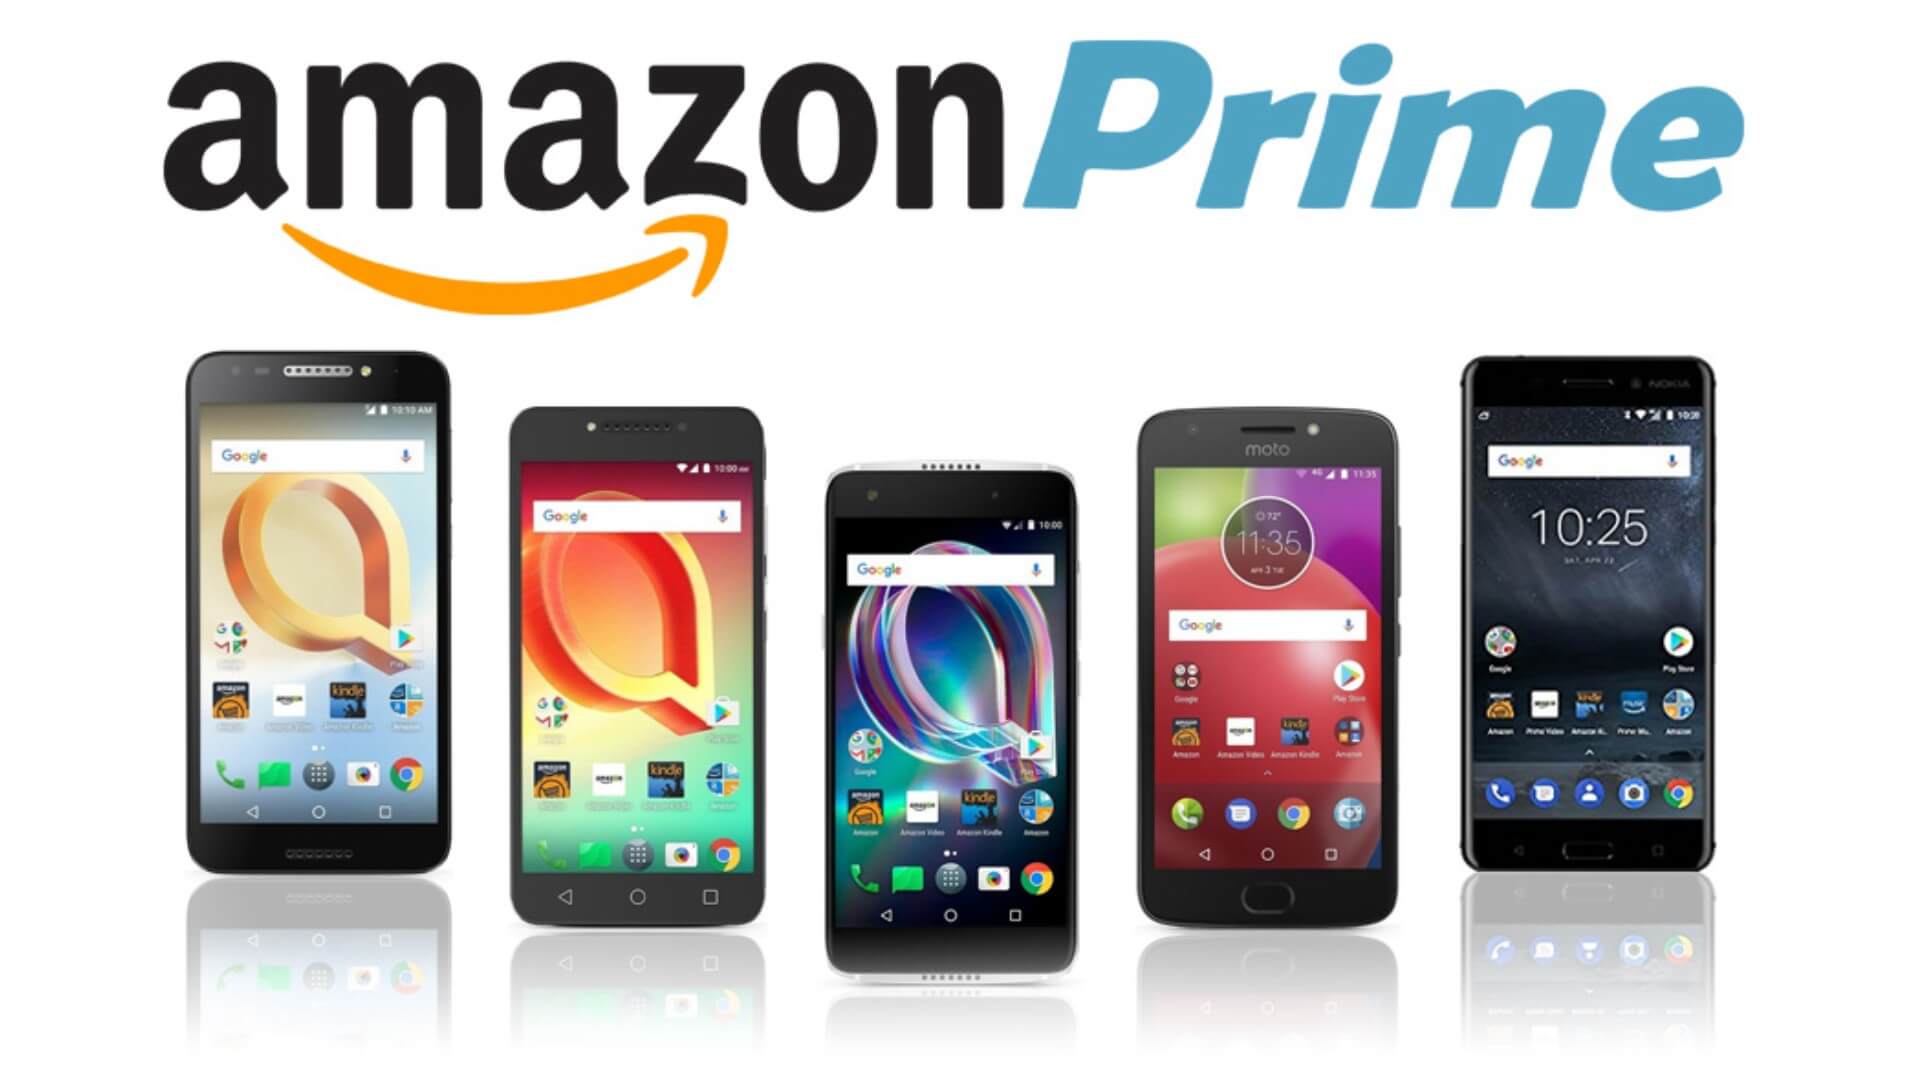 Амазон телефон. Amazon Phone capture. Prime Telecom. Amazon Prime household.